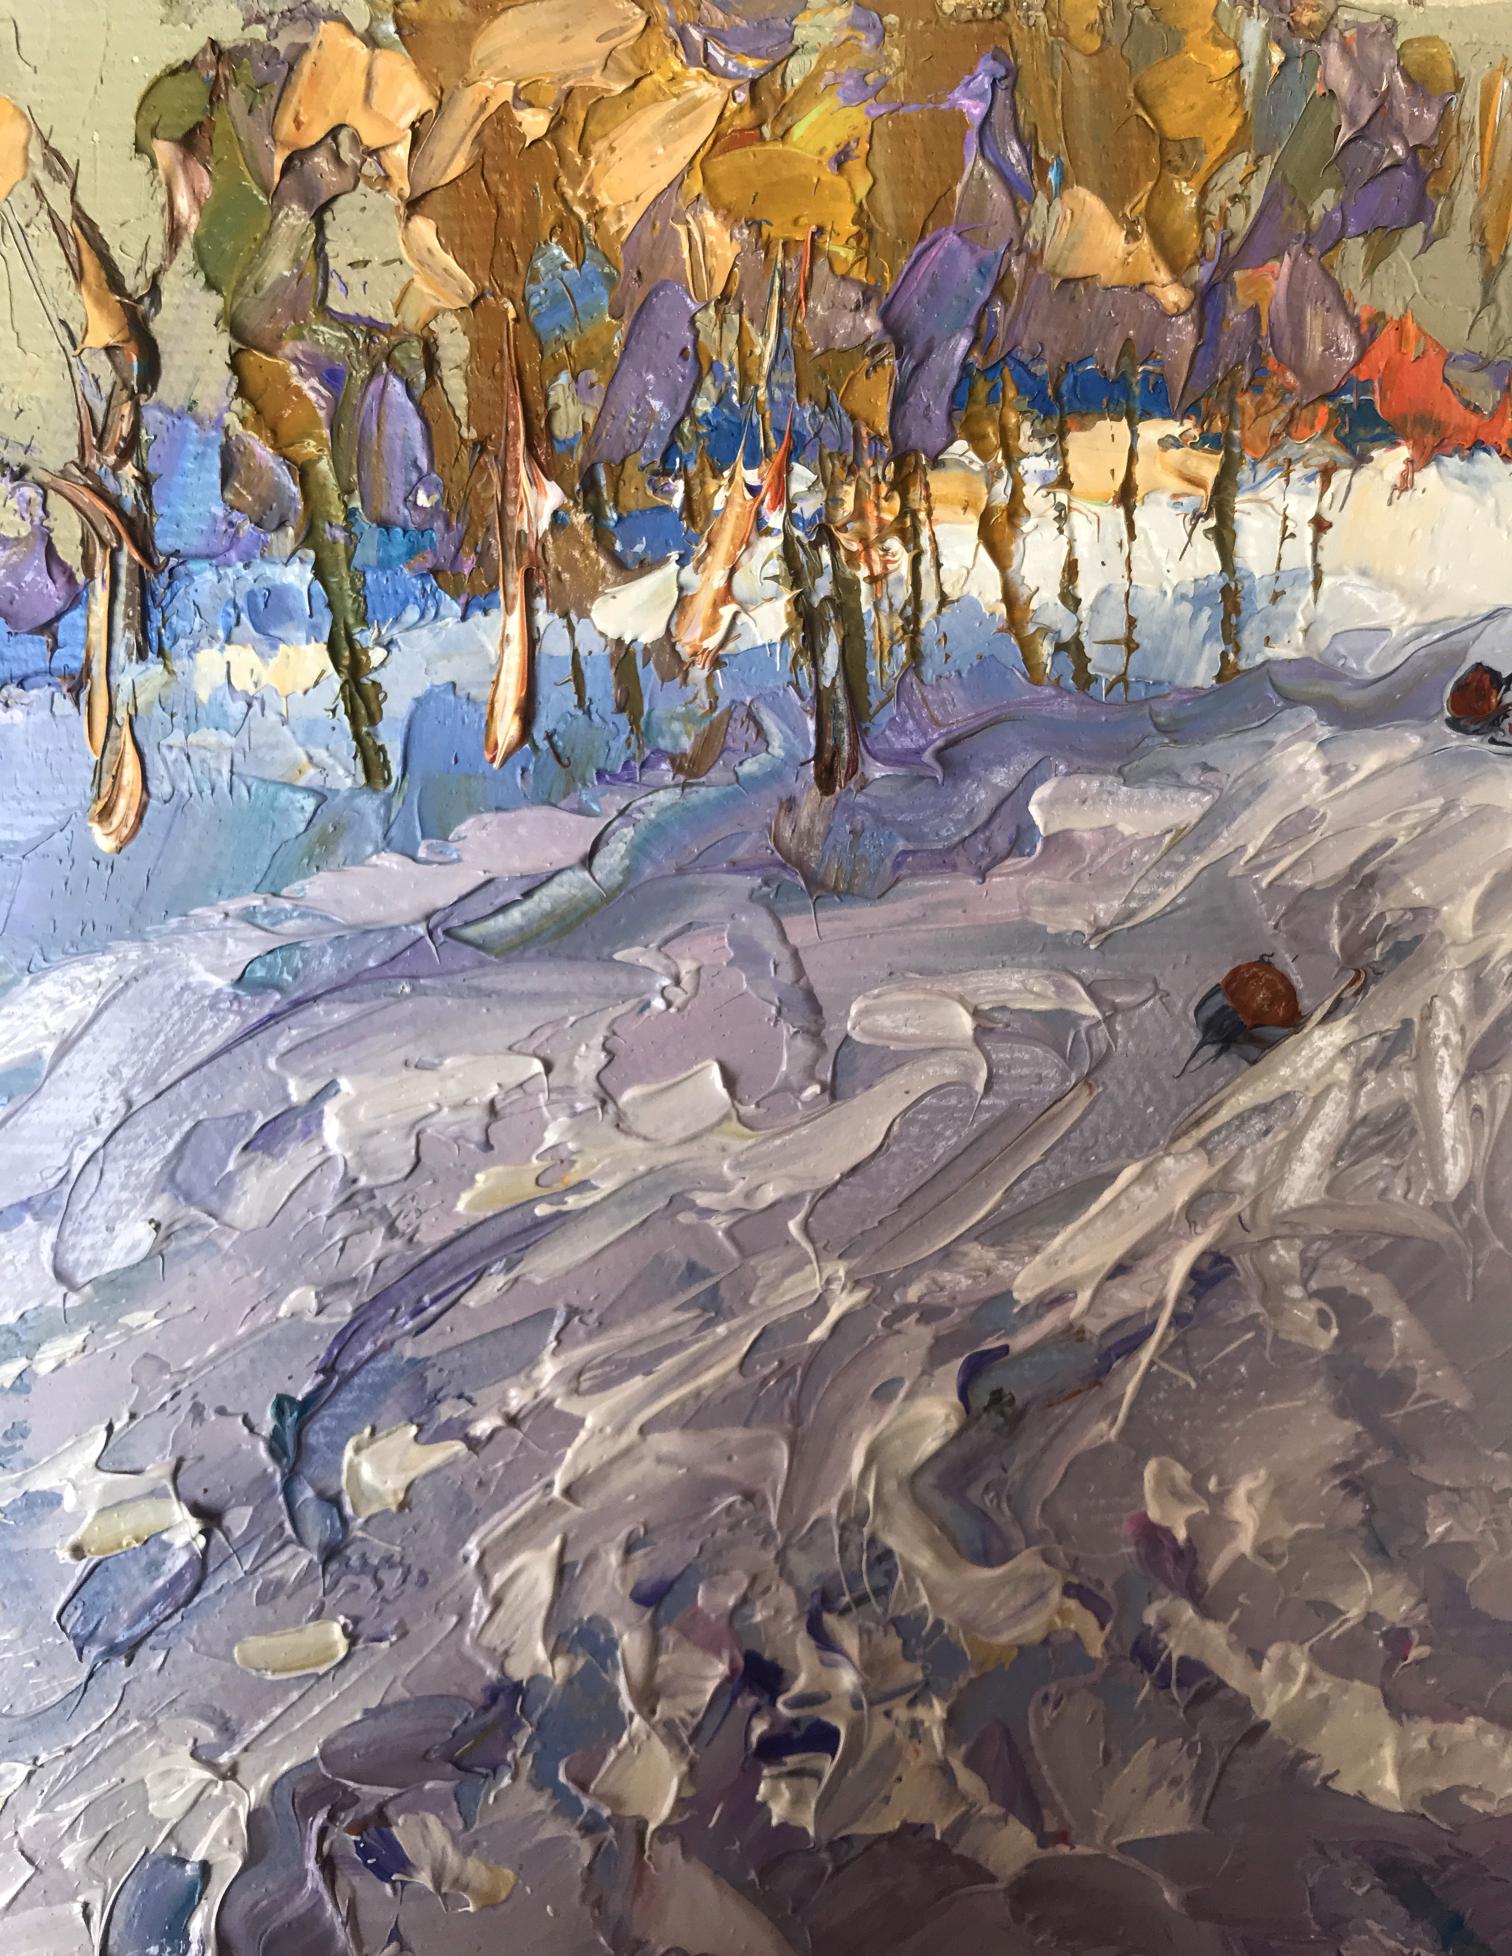 Hills in Frost: Oksana Ivanyuk's Oil Portrait of Snowy Terrain